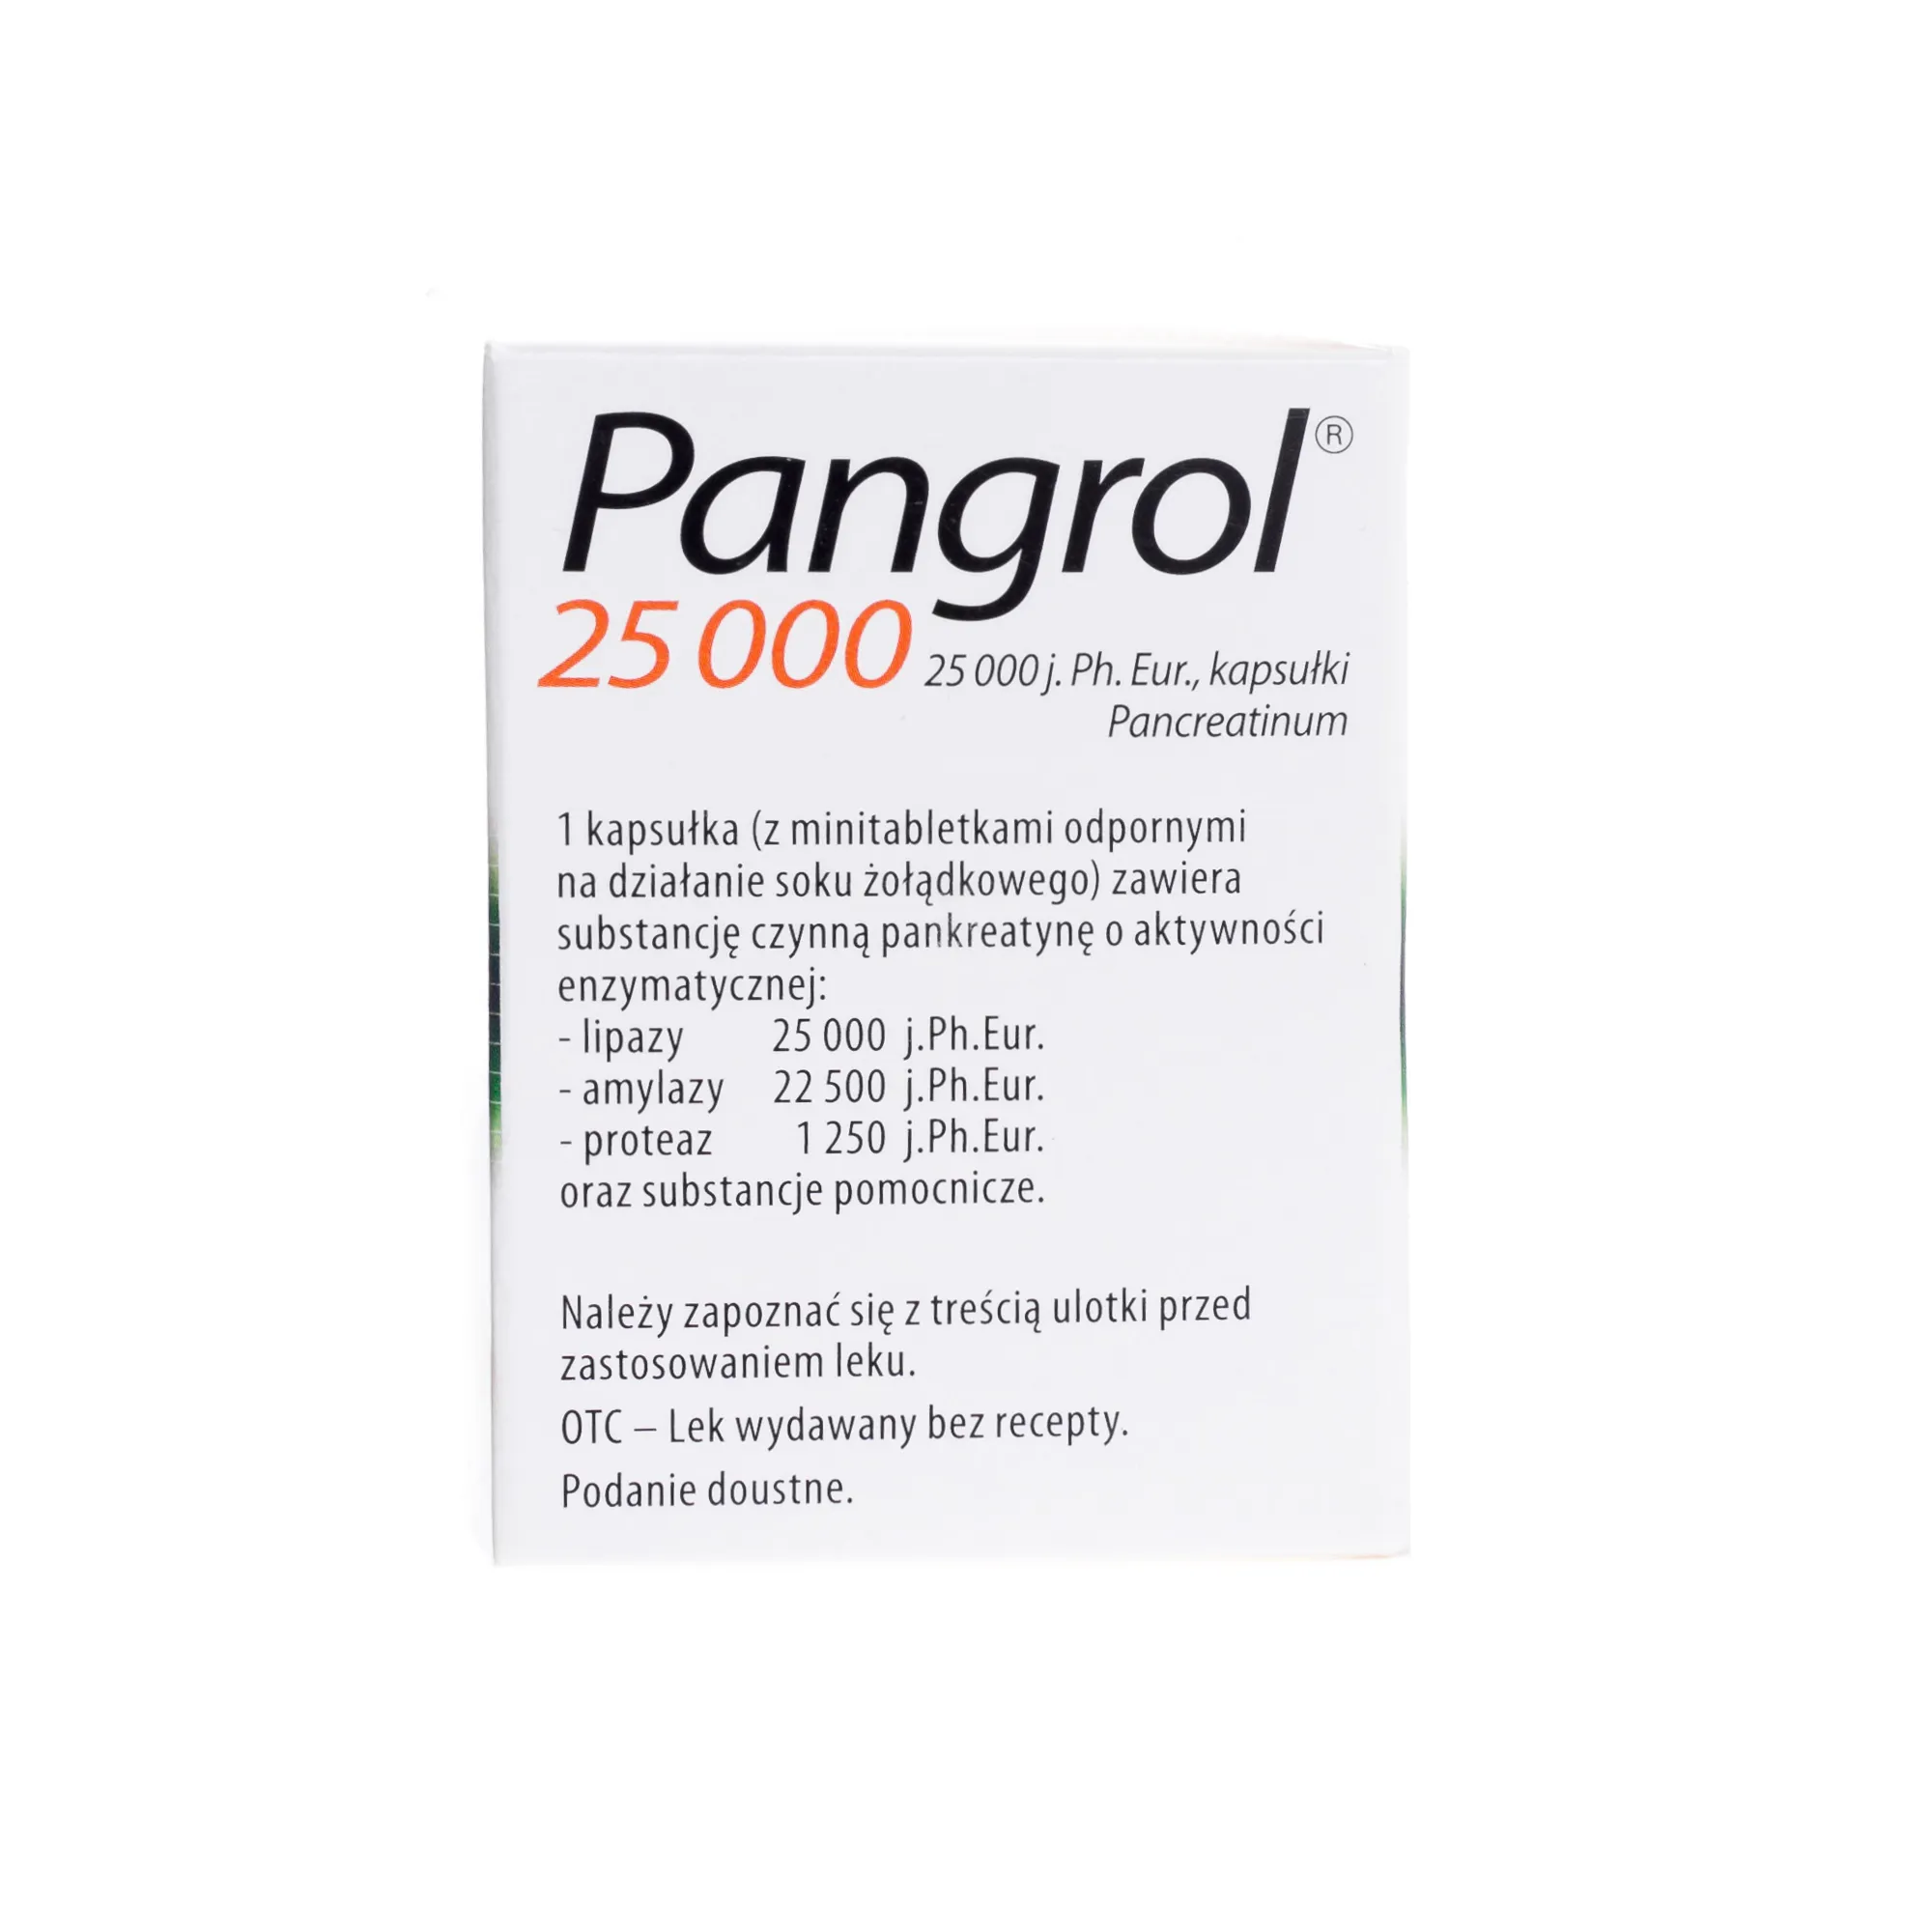 Pangrol 25 000, 25 000 j.Ph.Eur. lipazy, 20 kapsułek 